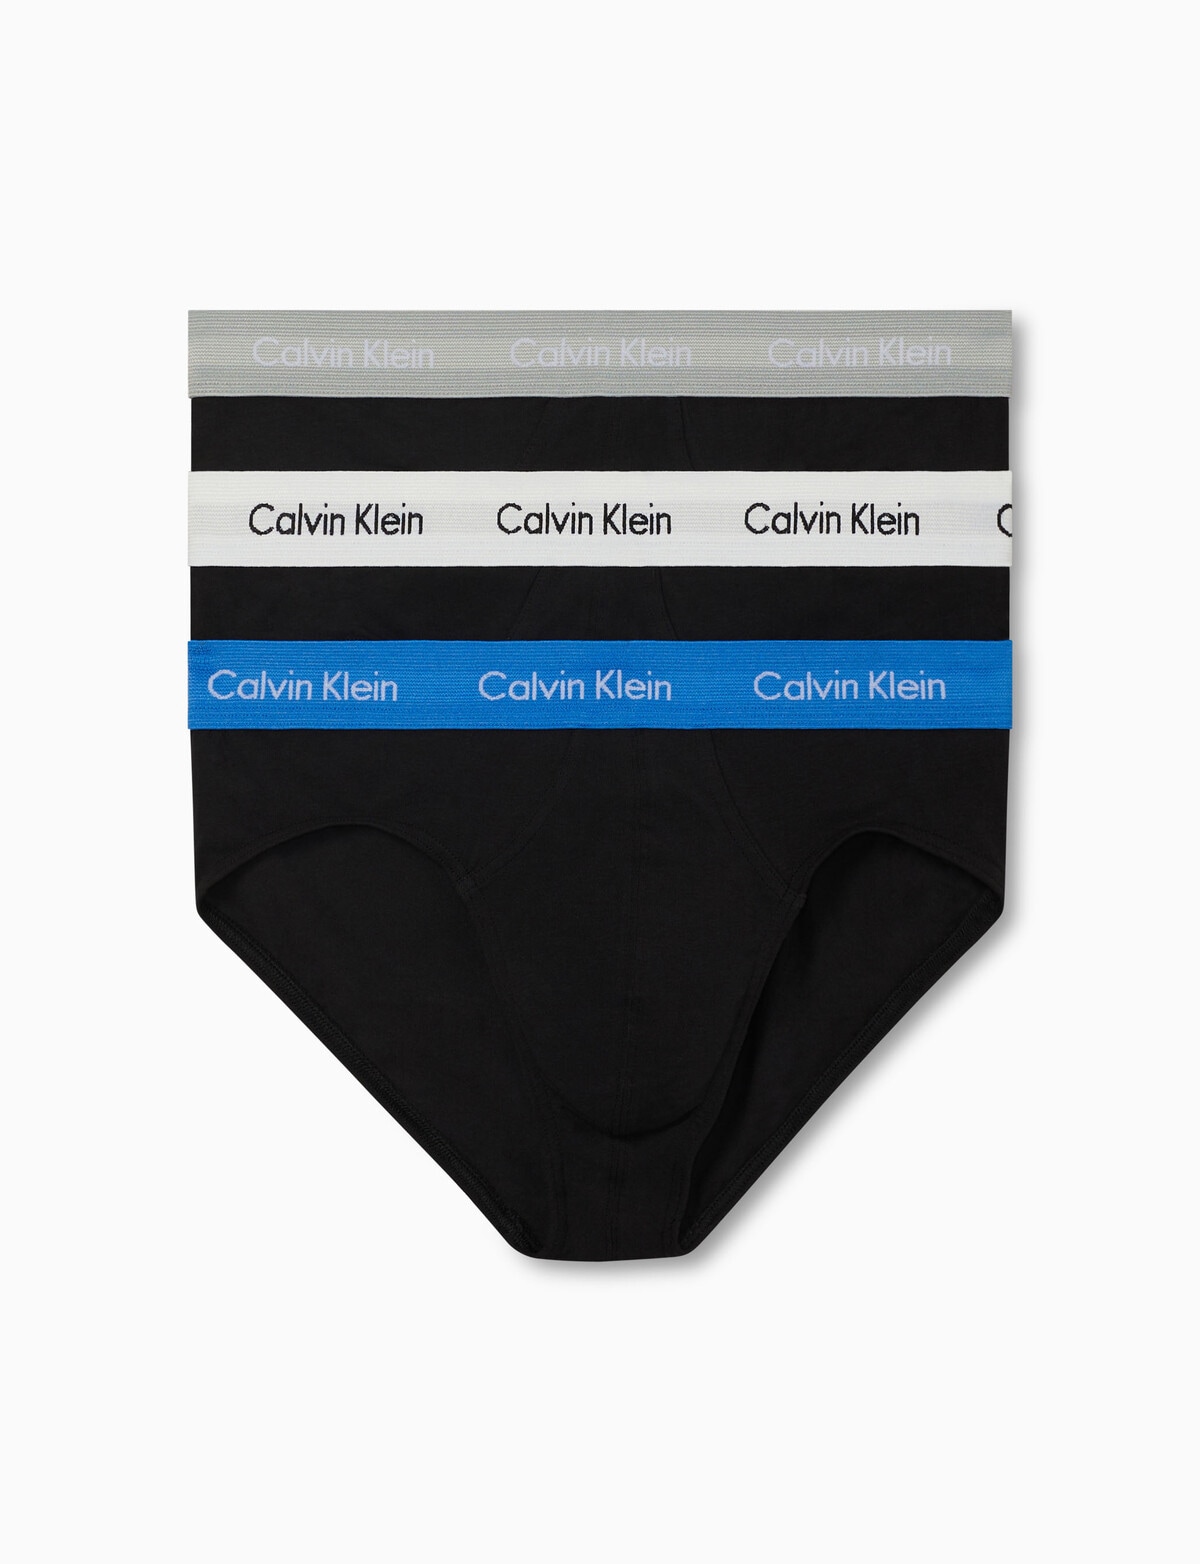 Calvin Klein Engineered Cotton Stretch Hip Brief, 3-Pack, Black - Underwear